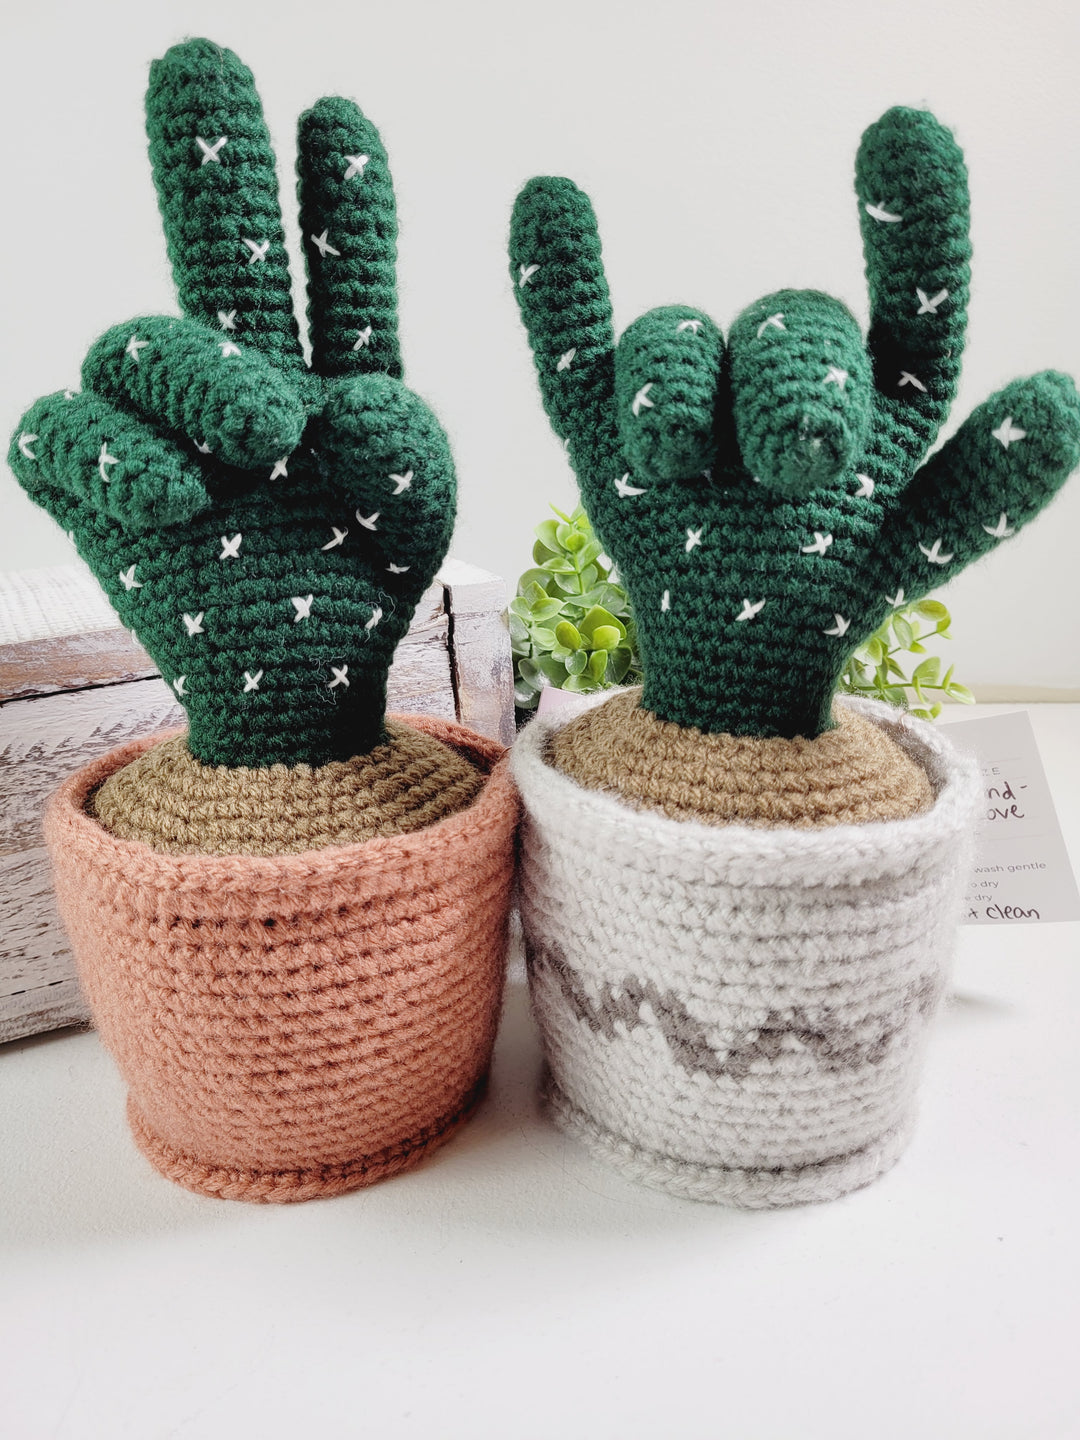 Ginger Made by Jenn, Crochet Hand Sign Plants